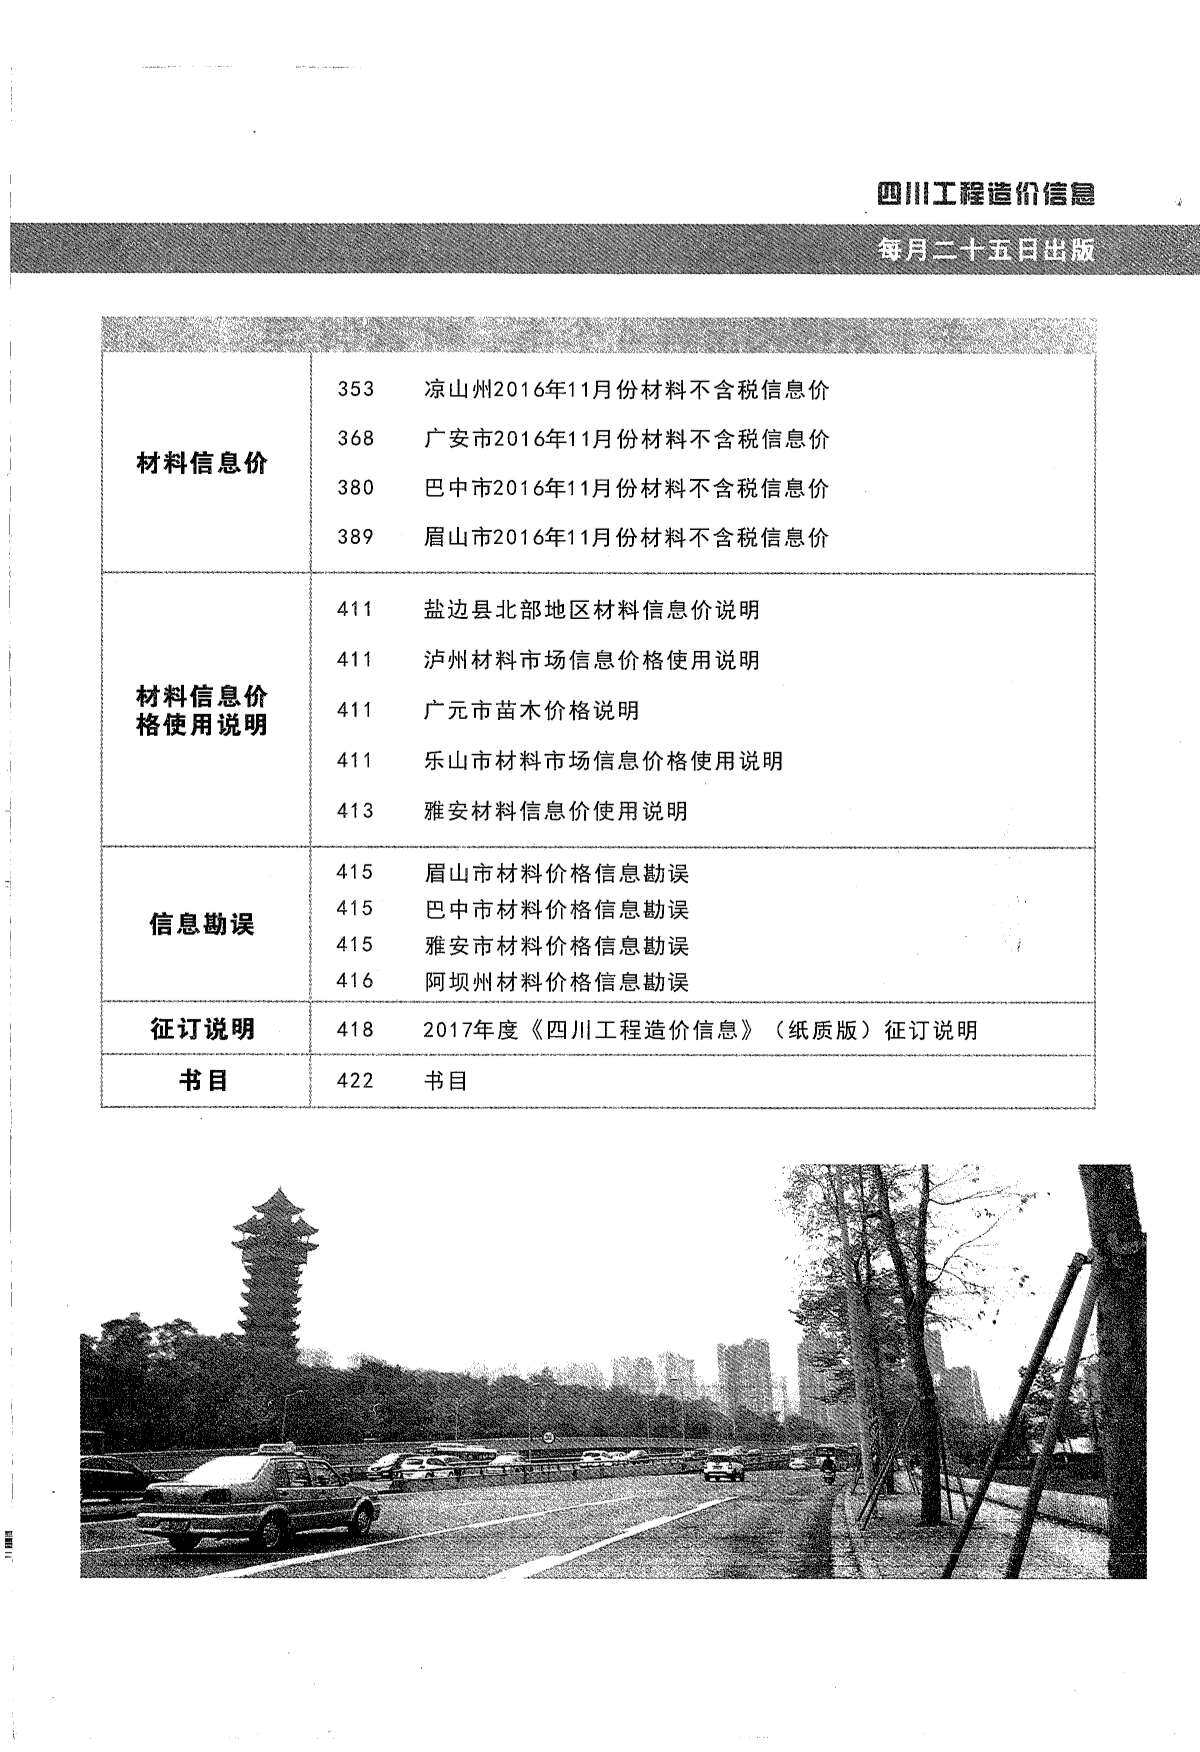 四川省2016年12月工程造价信息期刊